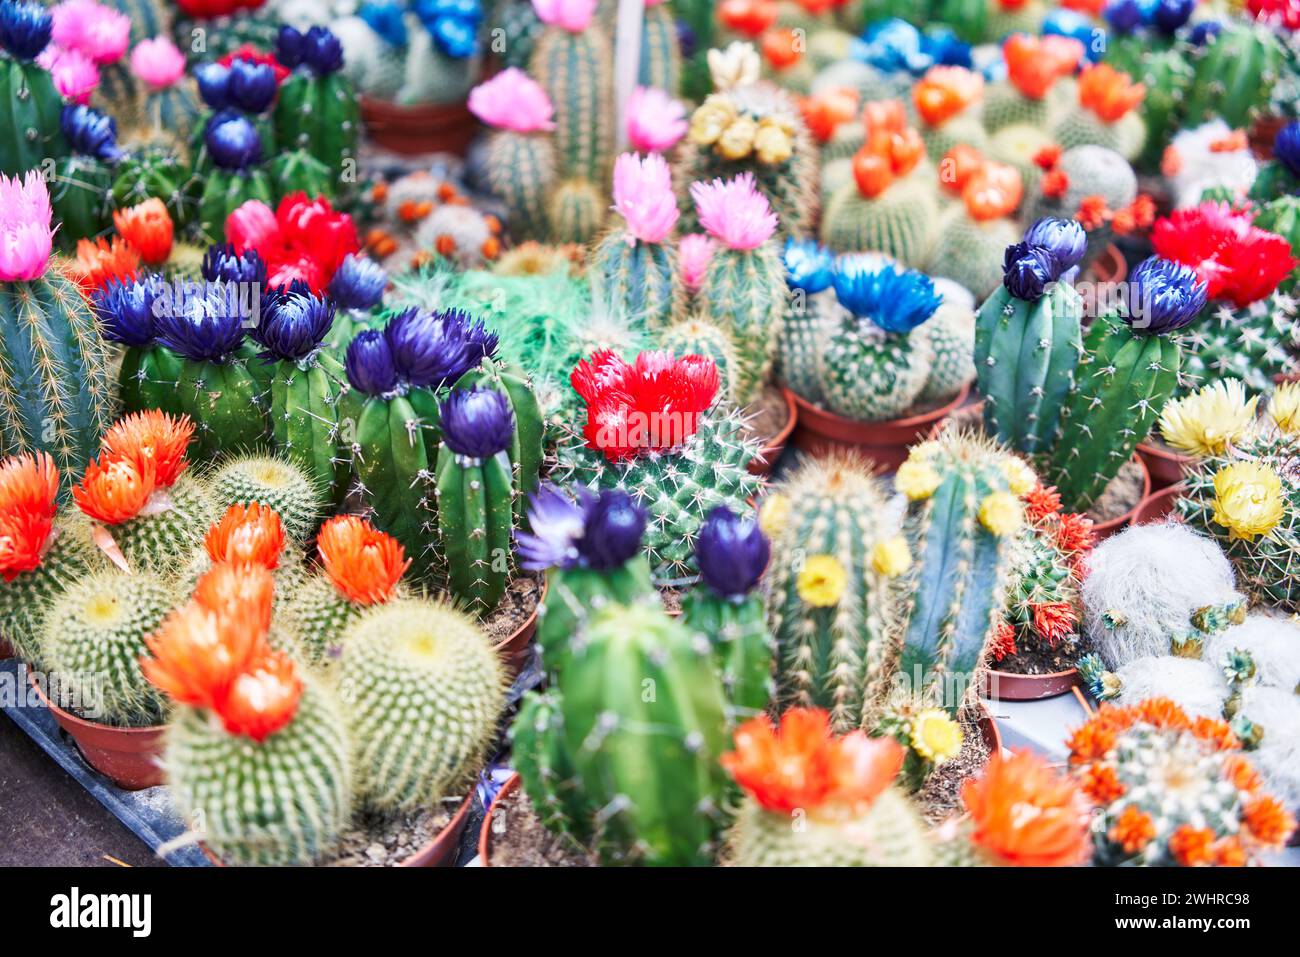 Farbenfrohe Kakteen mit leuchtenden Blumen in Töpfen zum Verkauf in einer botanischen Gartenausstellung Stockfoto